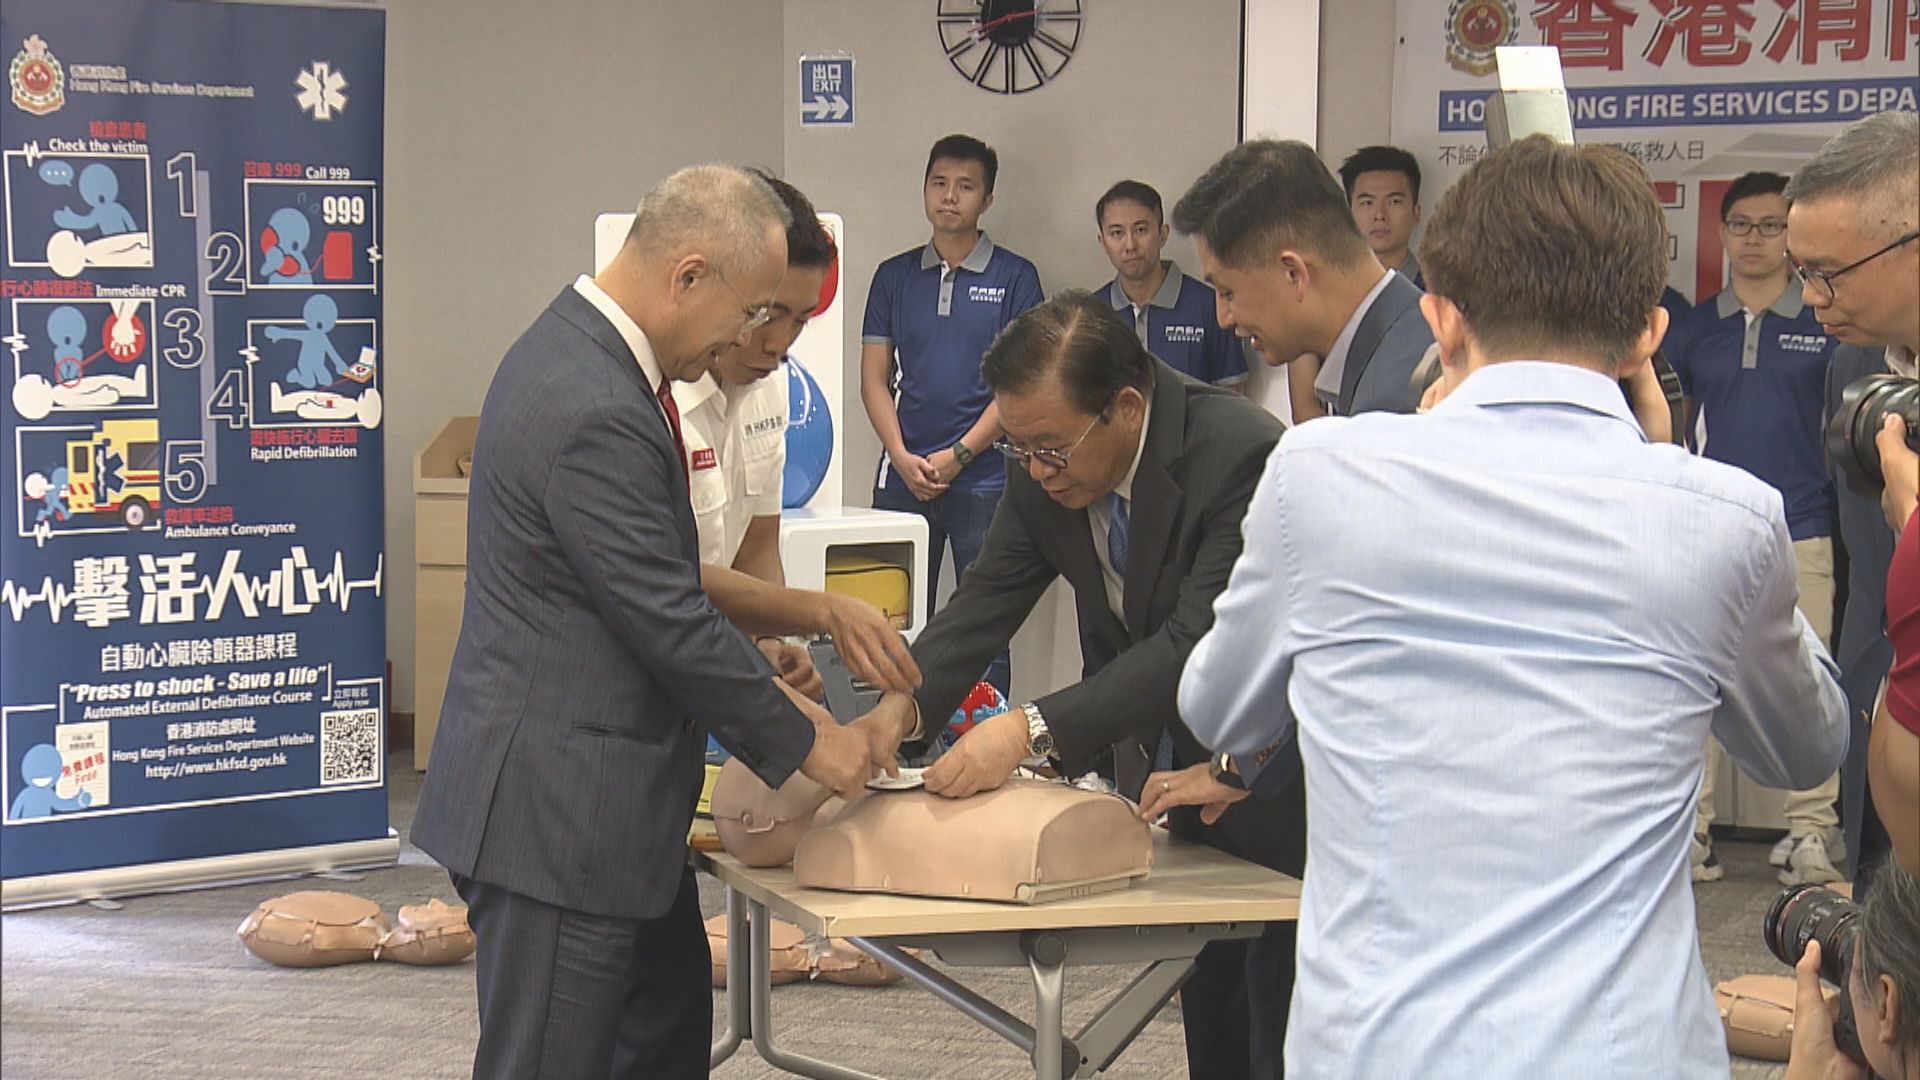 總商會與消防處合辦工作坊推廣AED急救訓練